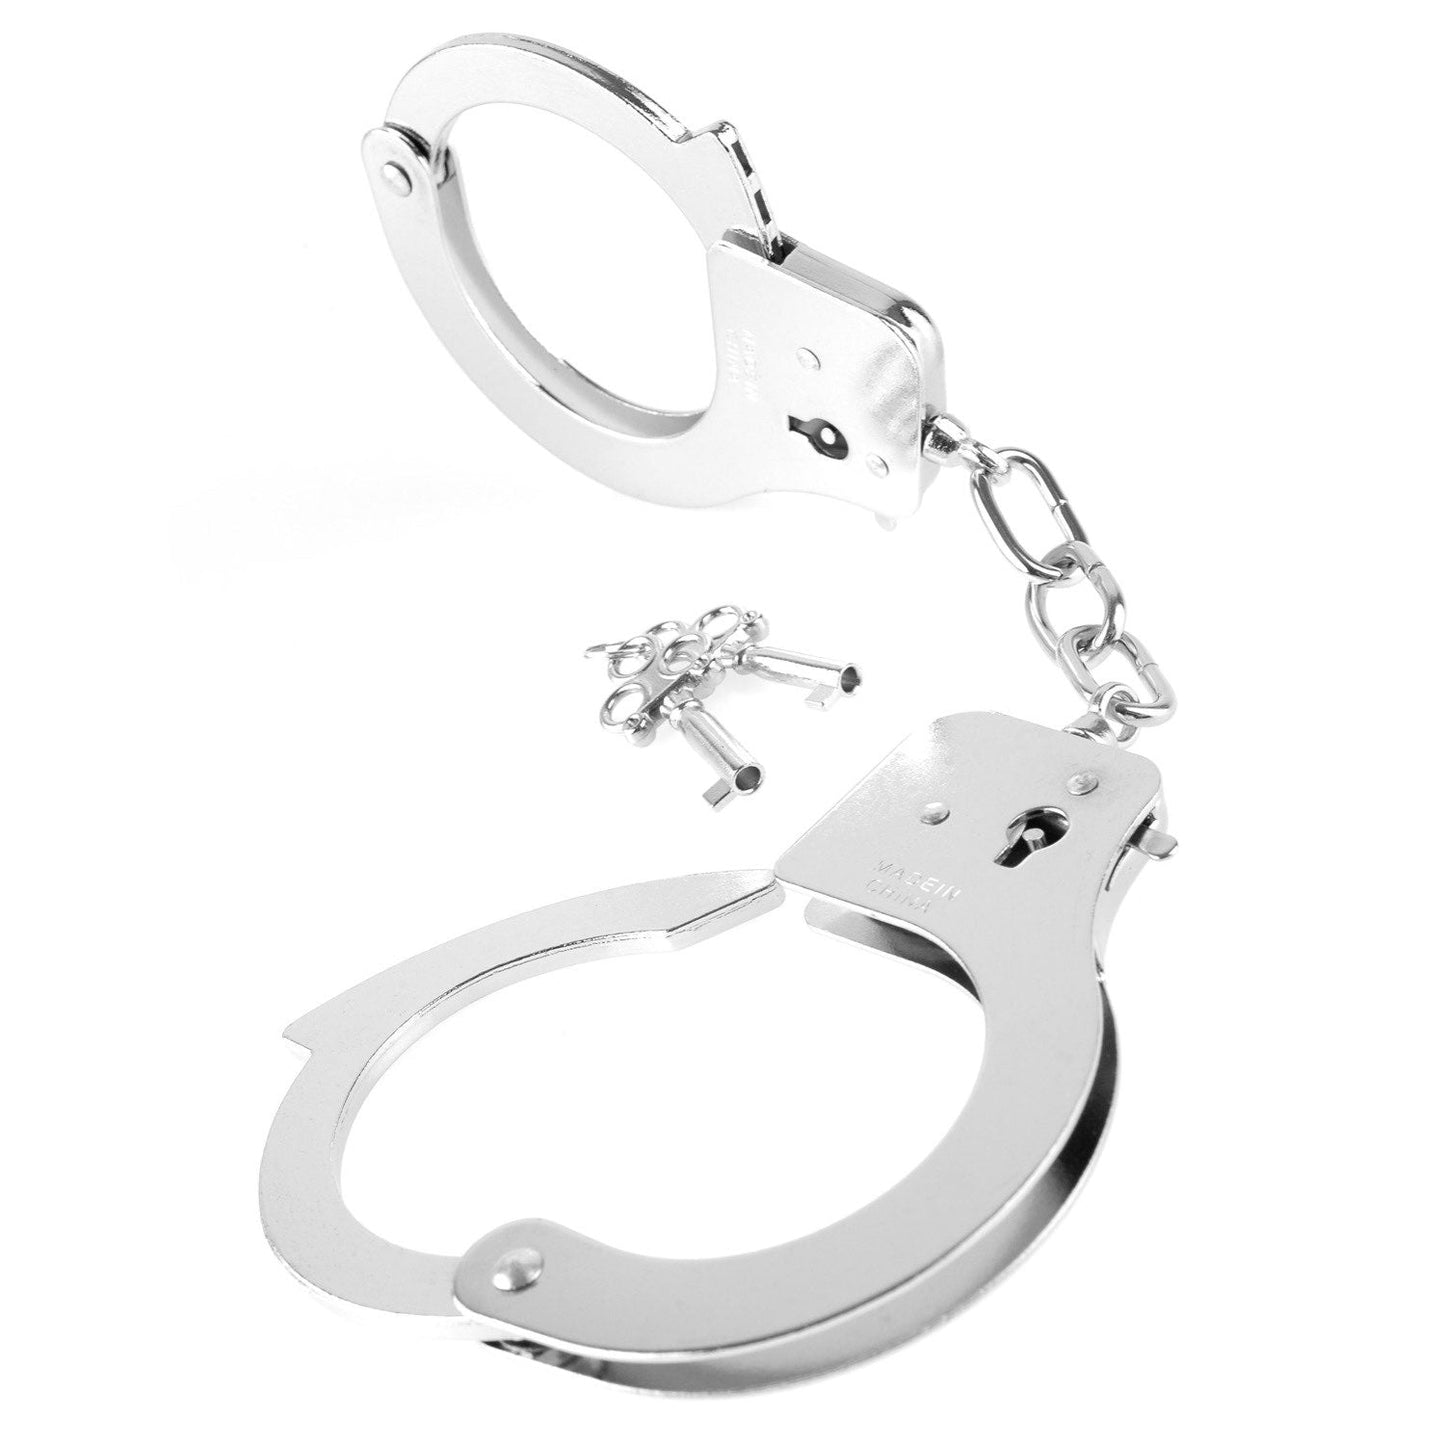 Designer Cuffs - Silver Hand Cuffs